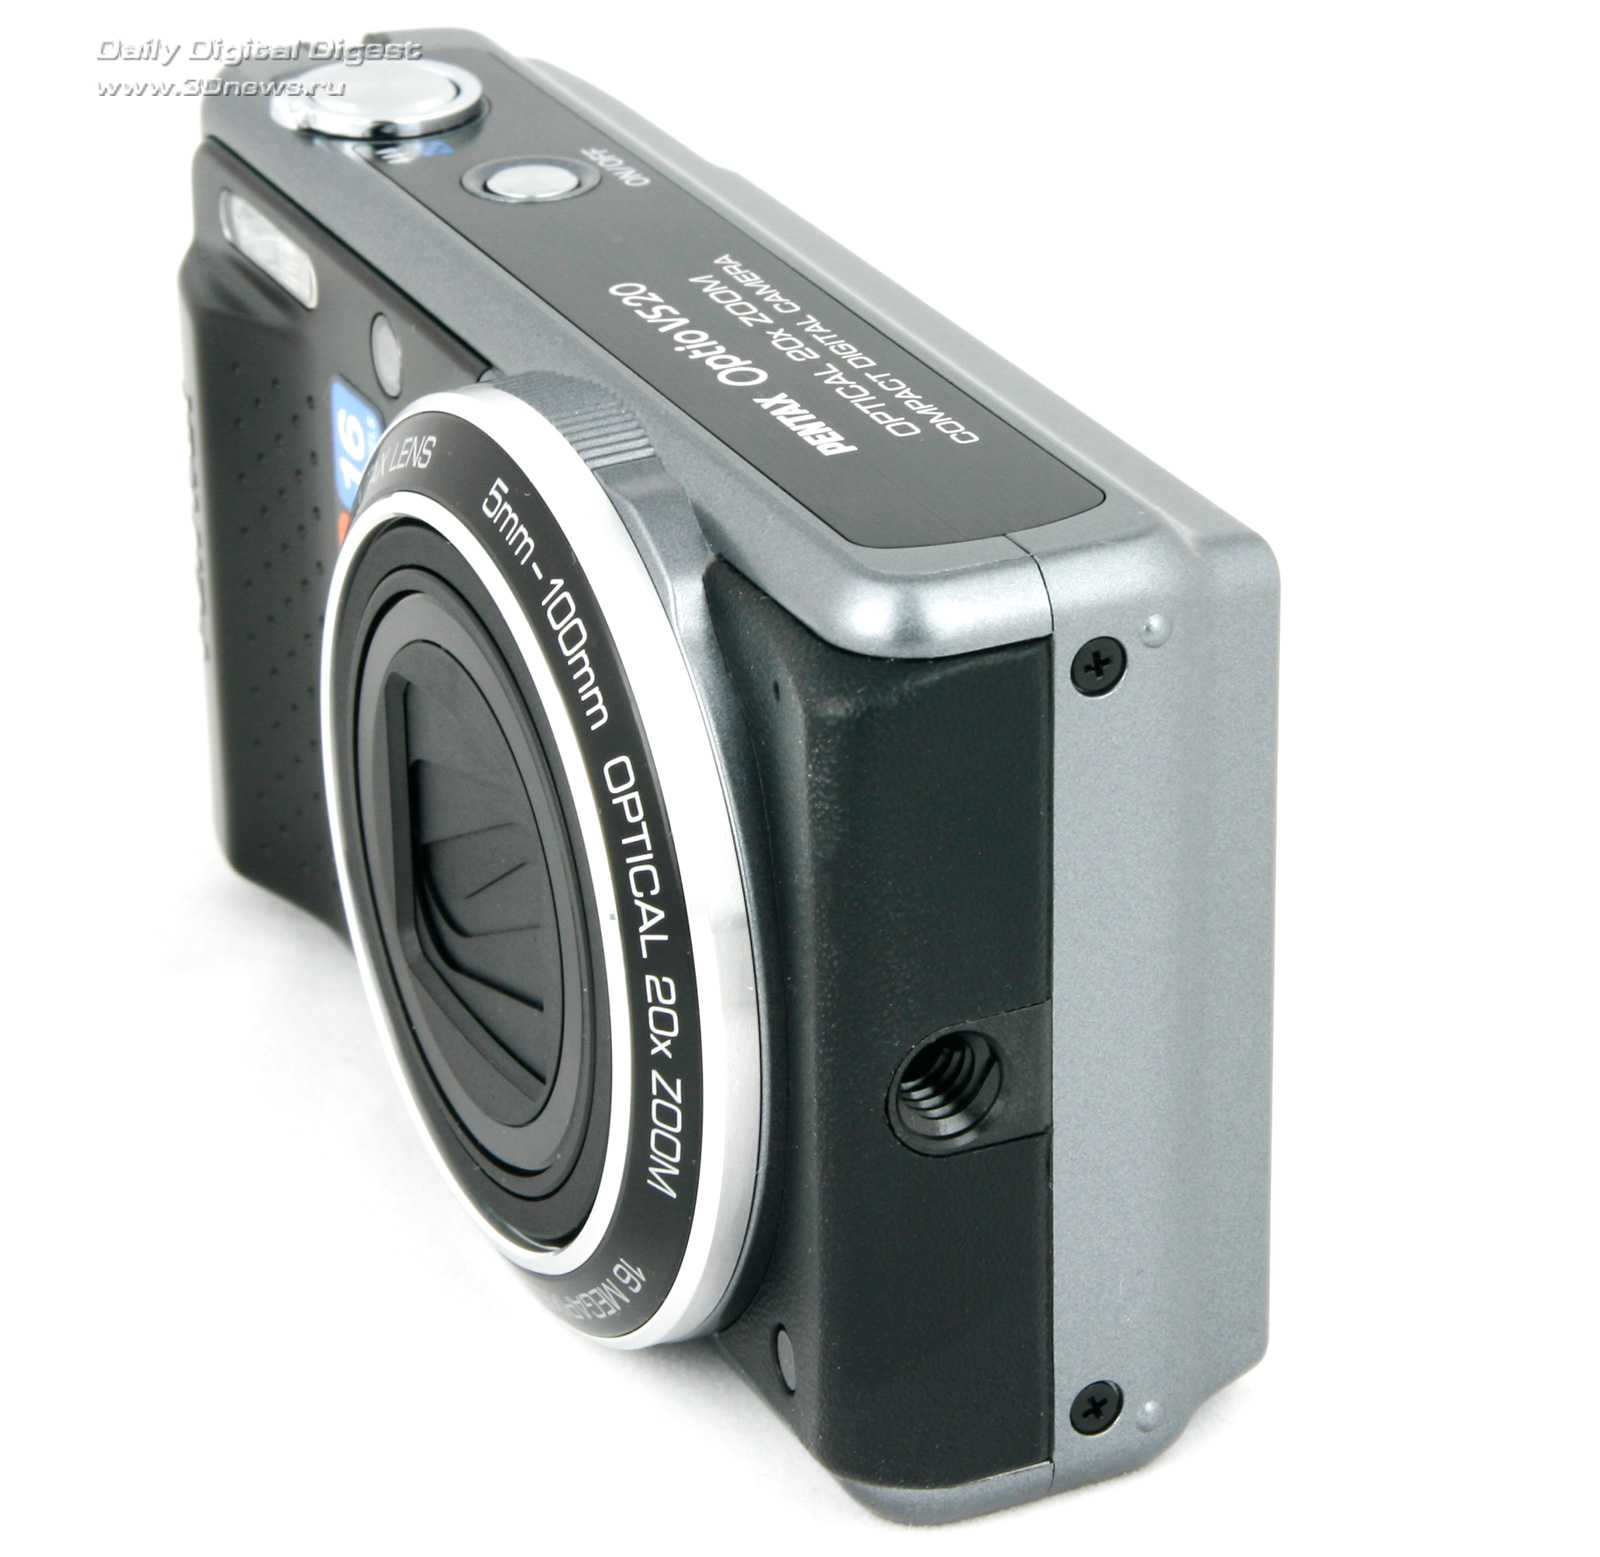 Pentax optio a20 - купить , скидки, цена, отзывы, обзор, характеристики - фотоаппараты цифровые